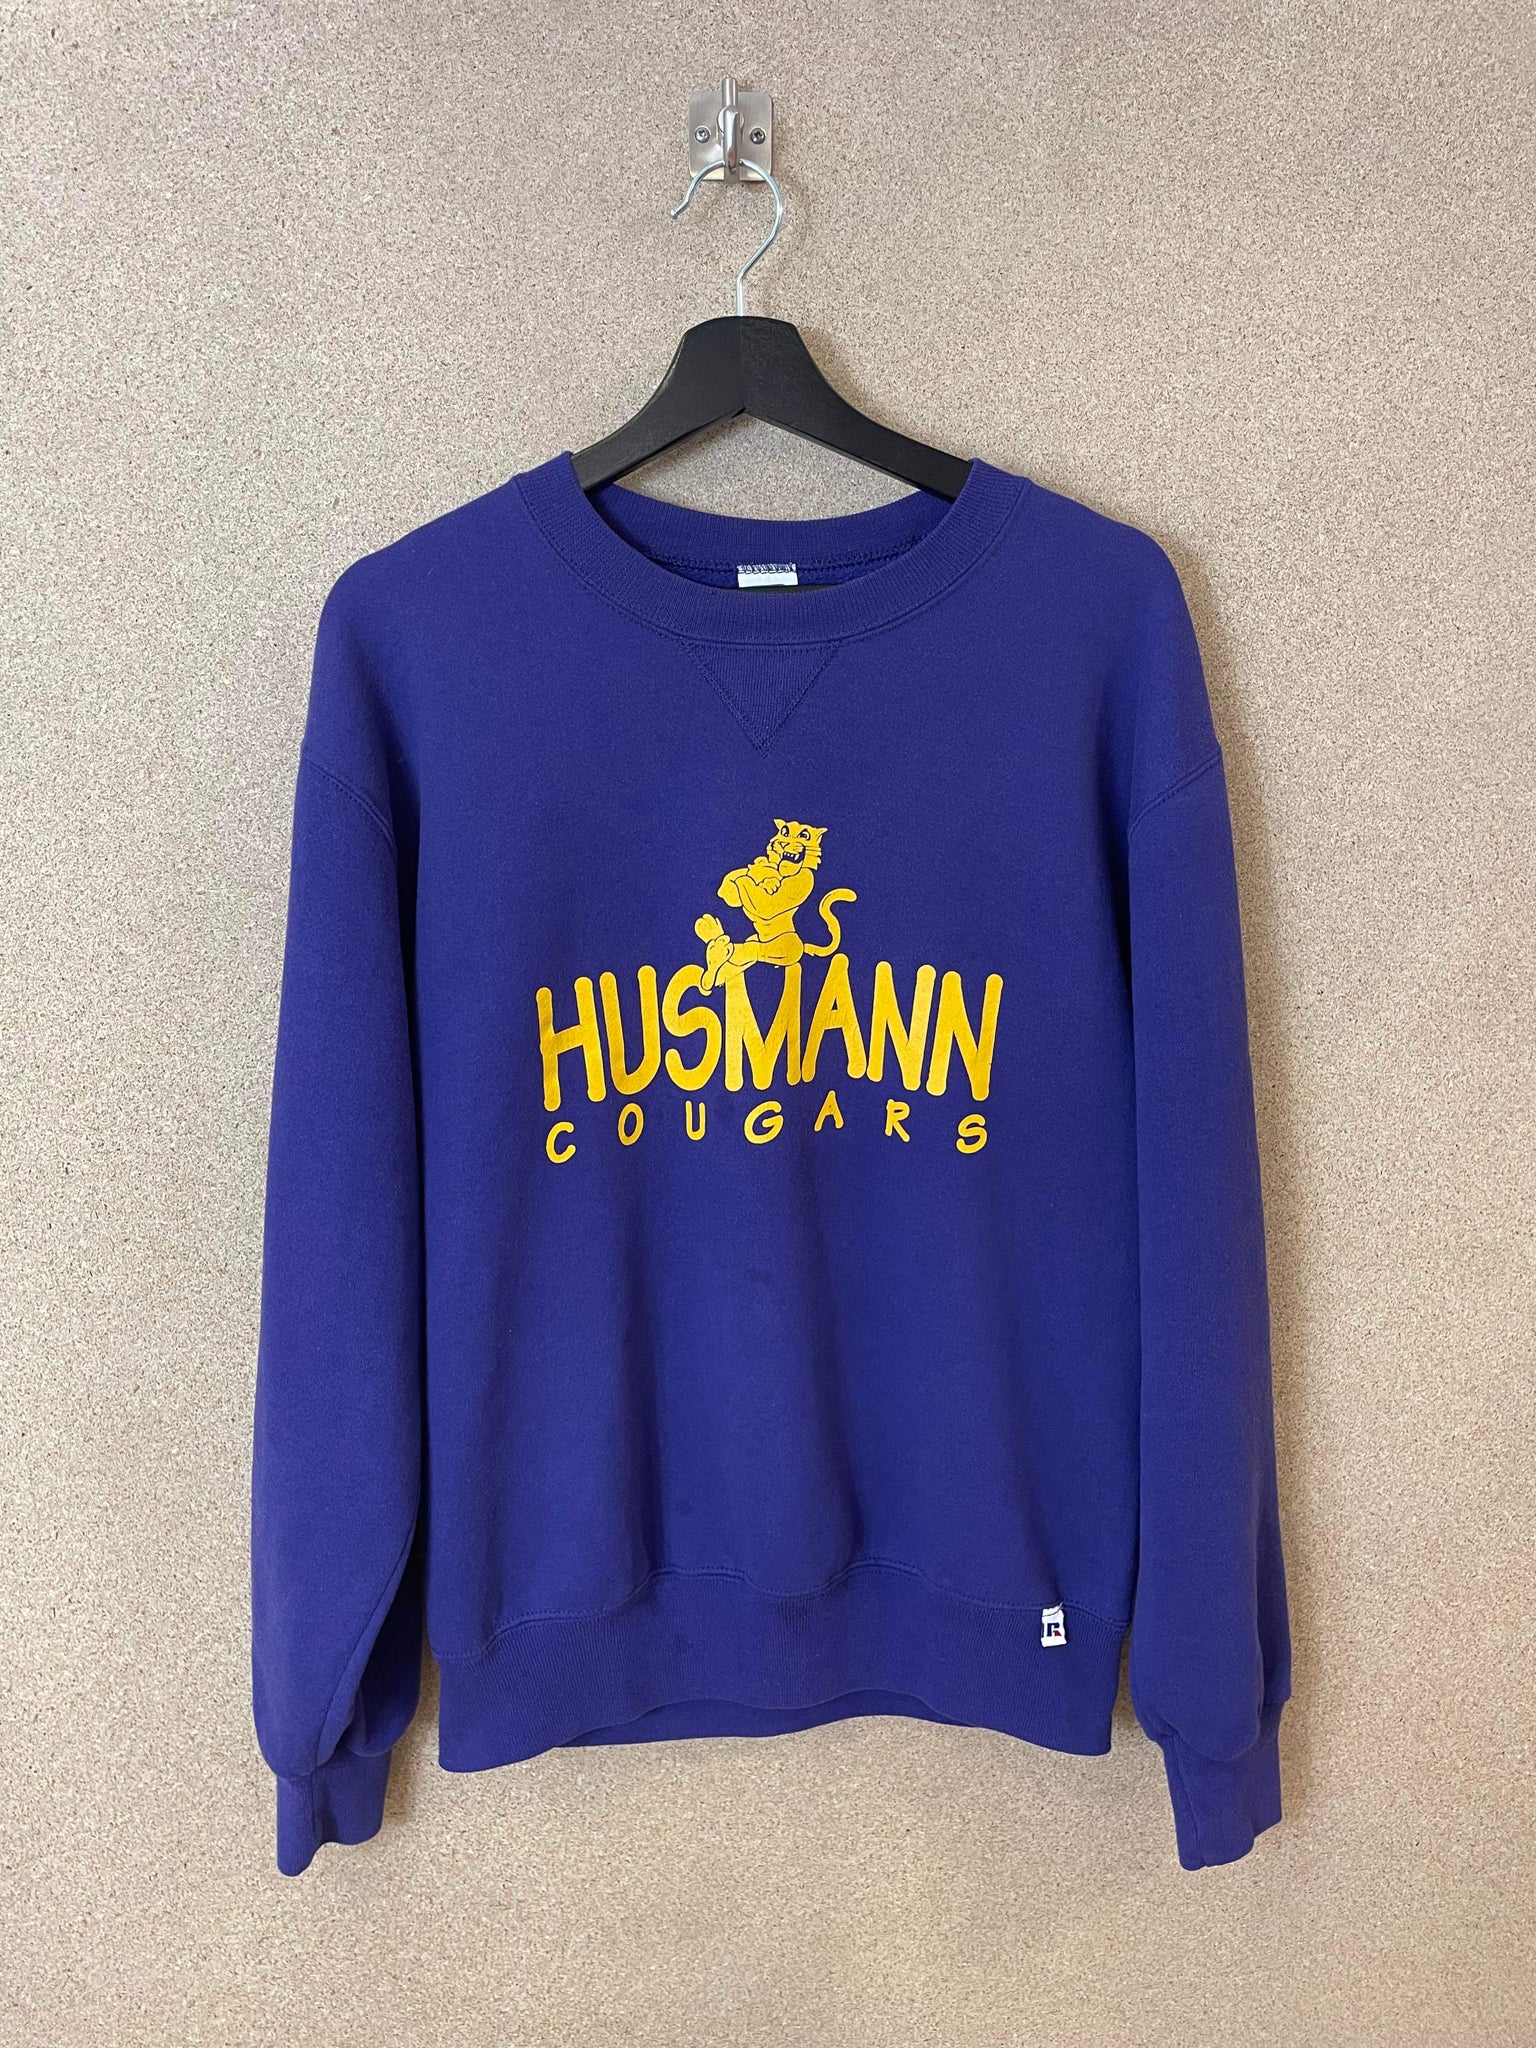 Vintage Husmann Cougars 90s Purple Sweatshirt - M